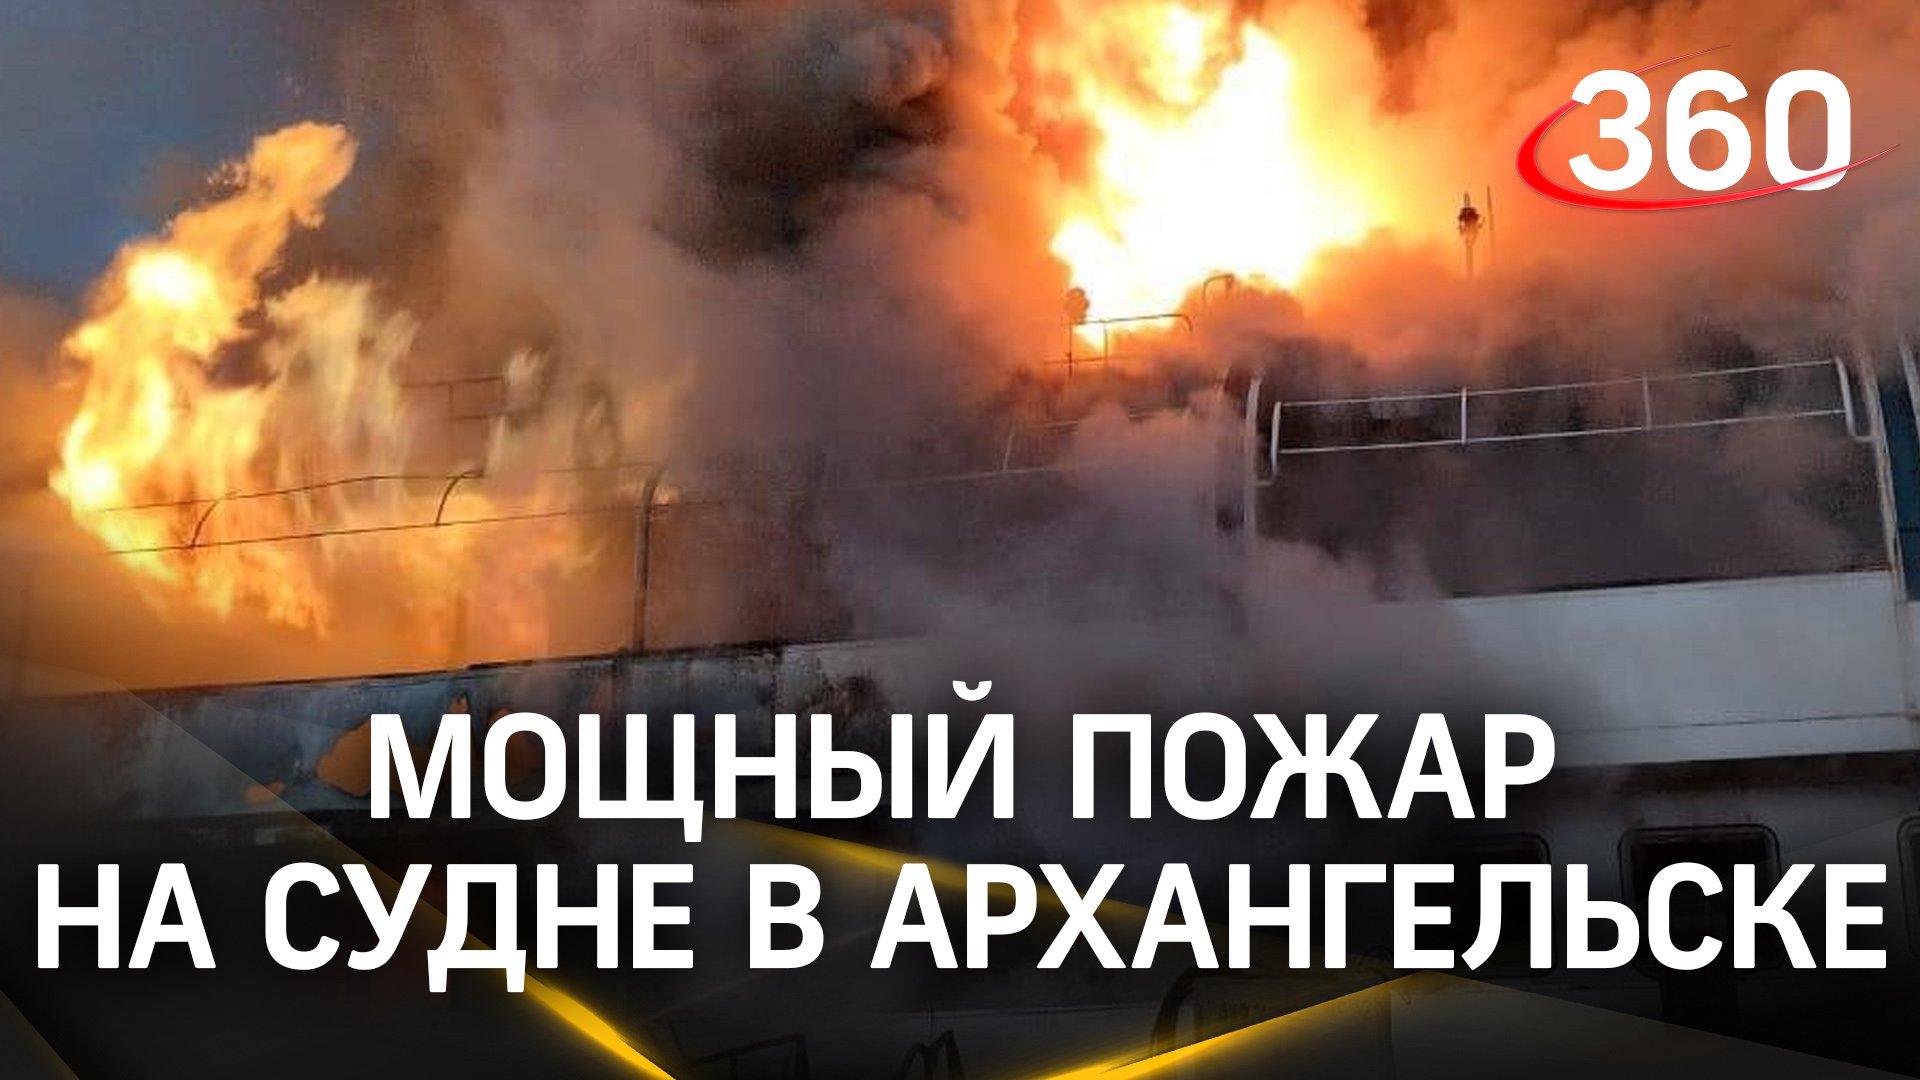 Клубы дыма и сирены пожарных: кадры крупного пожара на теплоходе в Архангельске